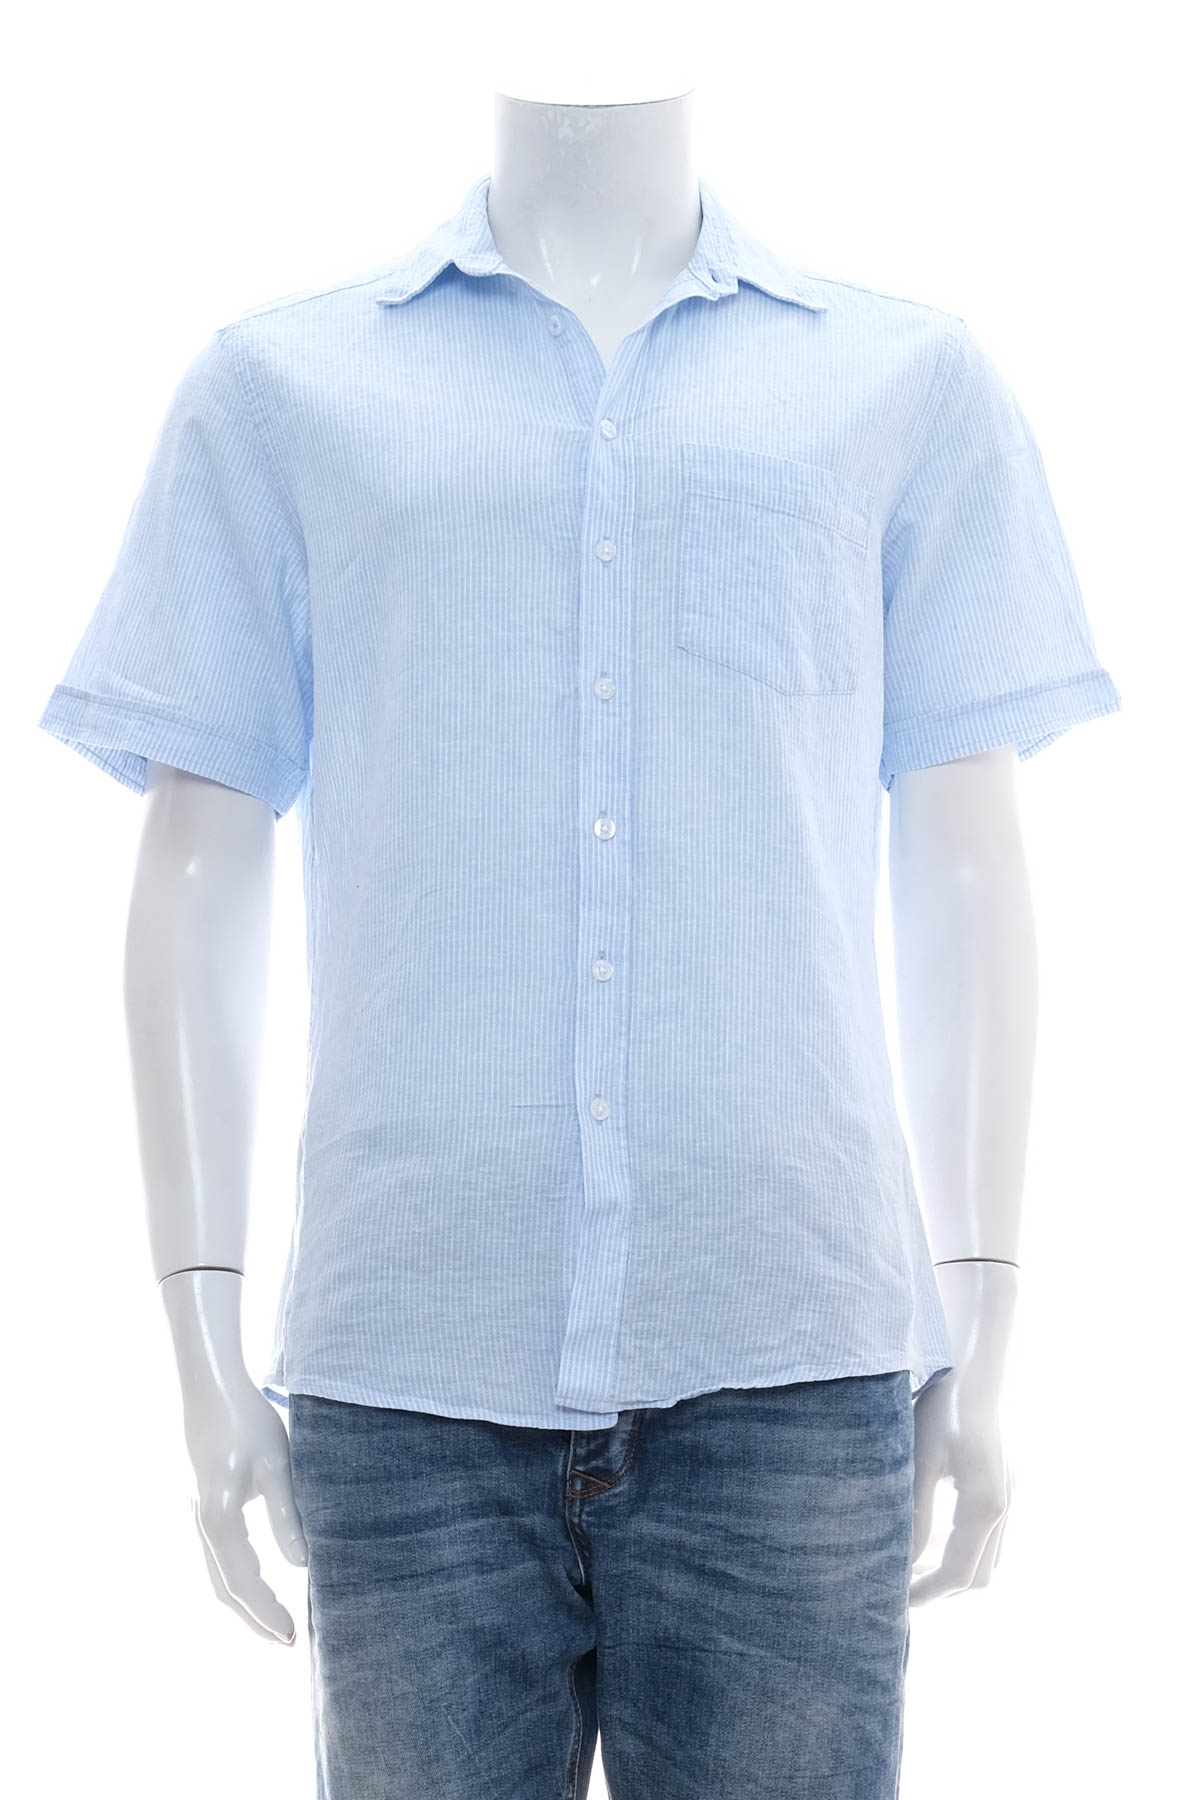 Ανδρικό πουκάμισο - DUNMORE - 0